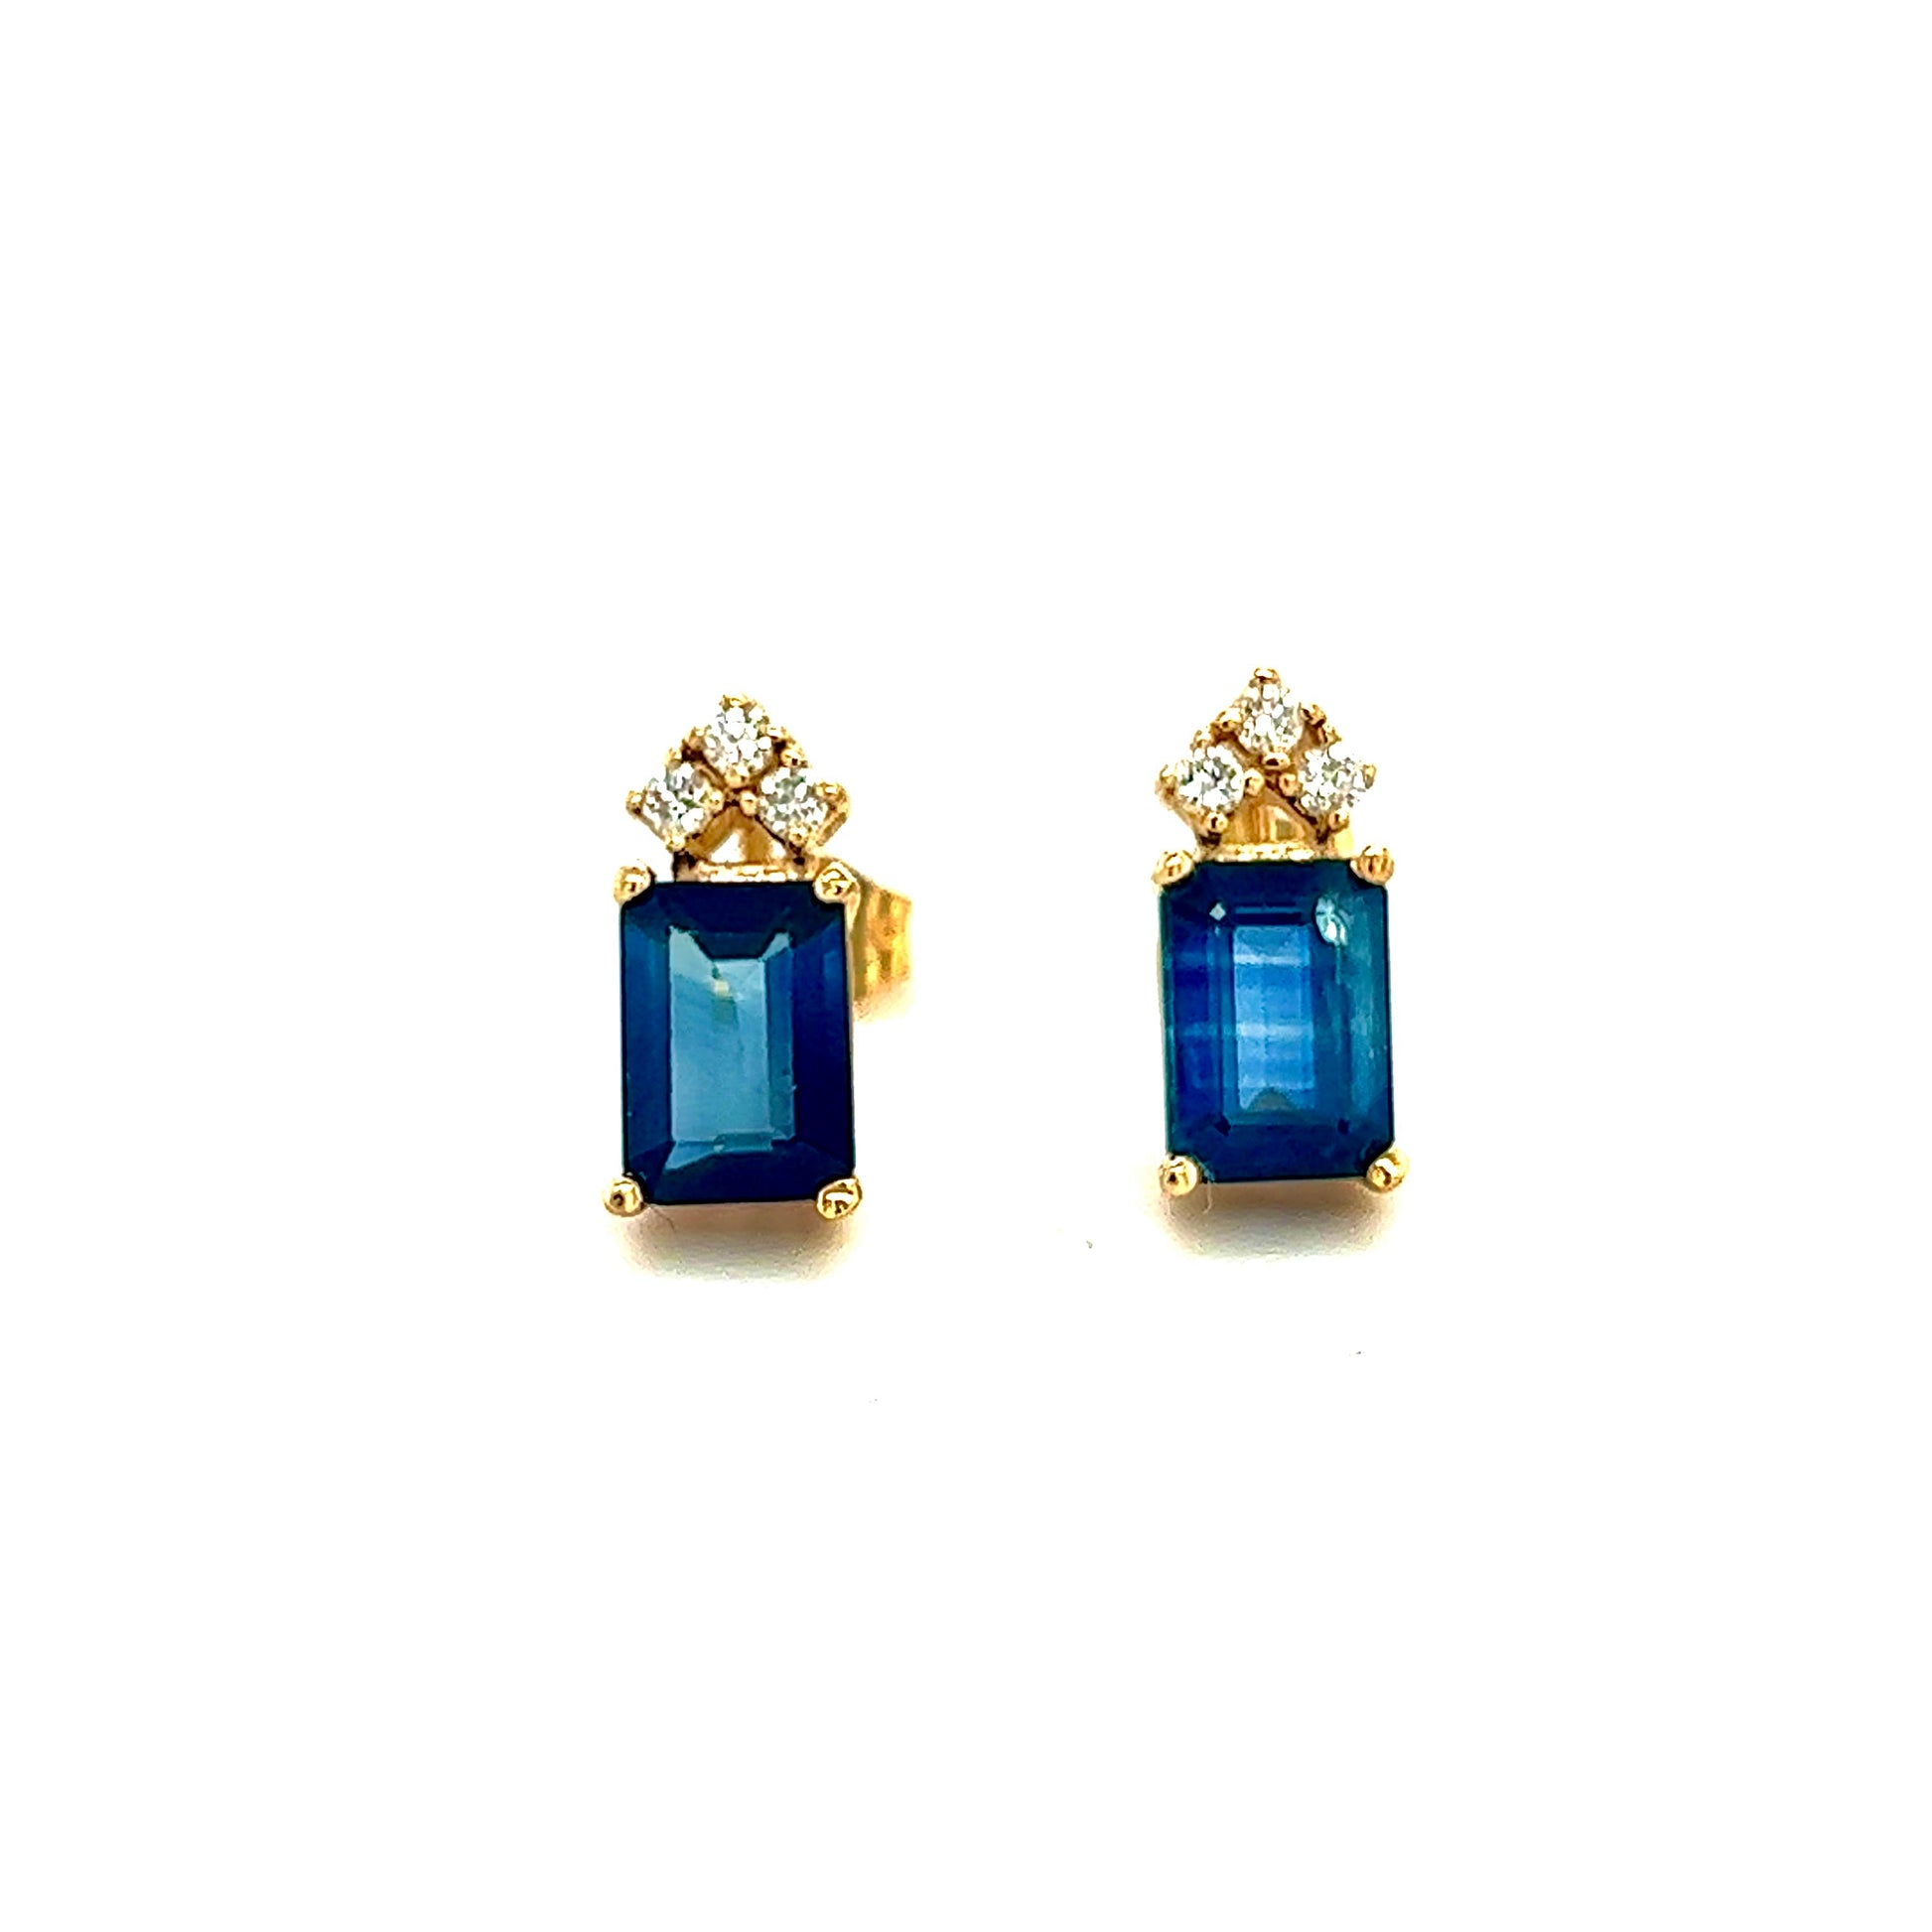 Natural Sapphire Diamond Earrings 14k Gold 2.14 TCW Certified $2,950 121247 - Certified Fine Jewelry